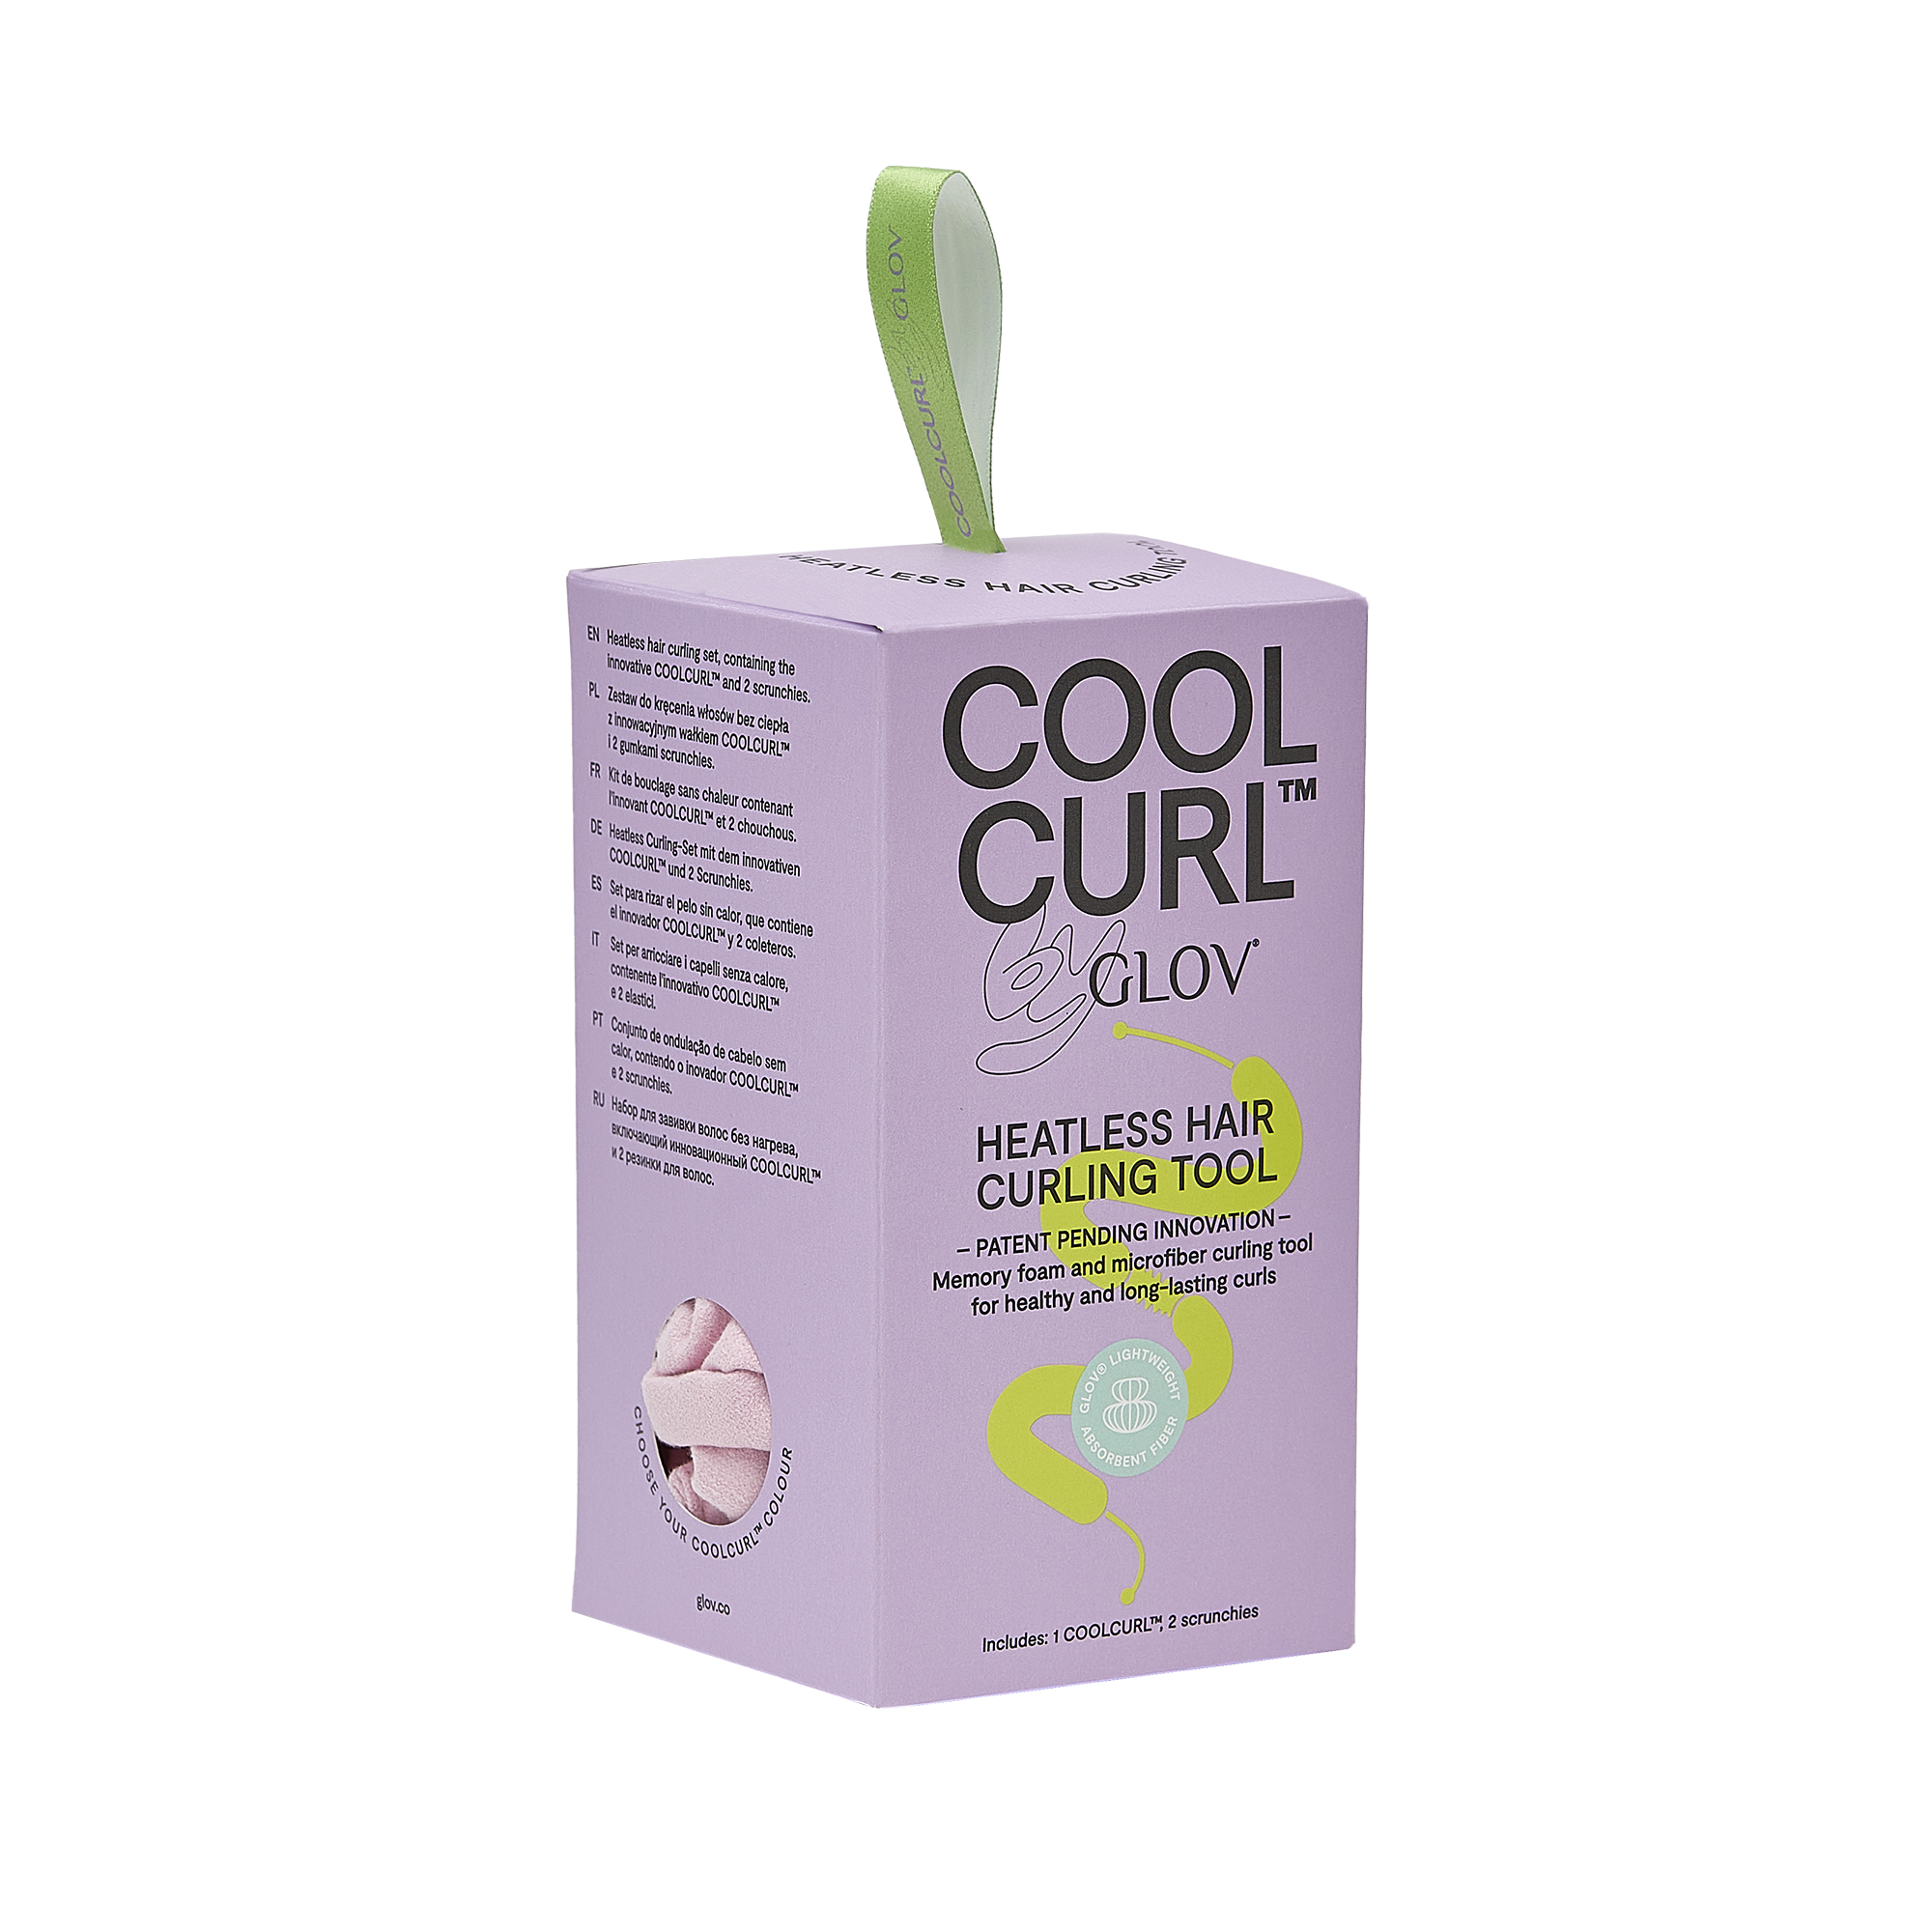 Το καινοτόμο GLOV COOLCURL, κάνει τις πιο ΤΕΛΕΙΕΣ μπούκλες στα μαλλιά ΧΩΡΙΣ τη χρήση θερμότητας! Αφήστε στην άκρη το πιστολάκι και την πρέσα και χτενιστείτε όσο πιο φυσικά γίνεται!